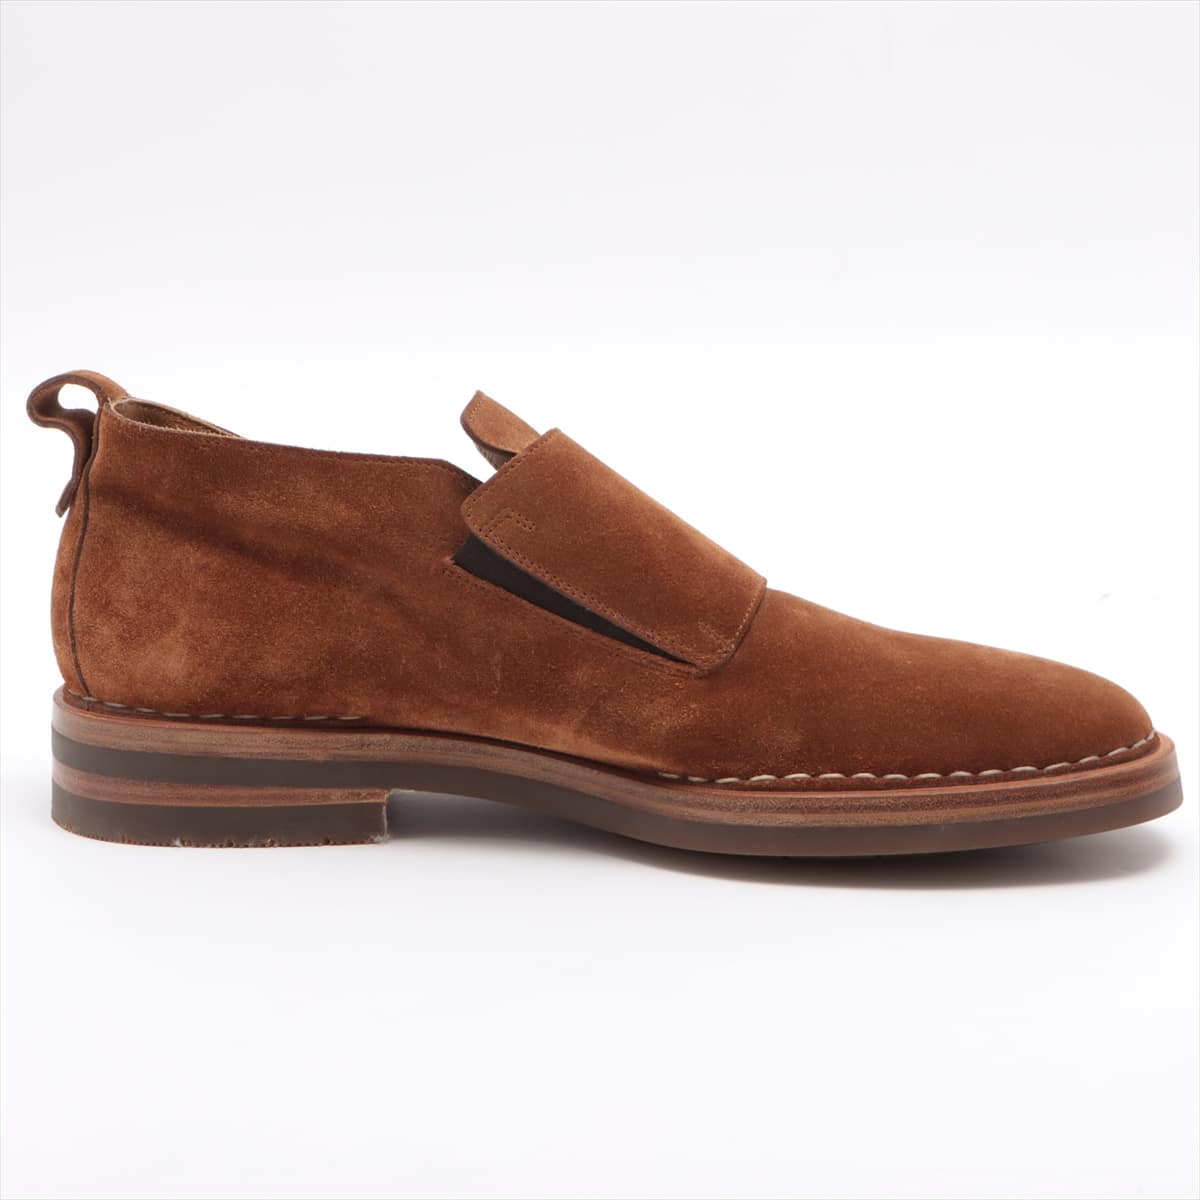 Santoni Suede Shoes 10 Men's Brown 15707 double monk strap shoes